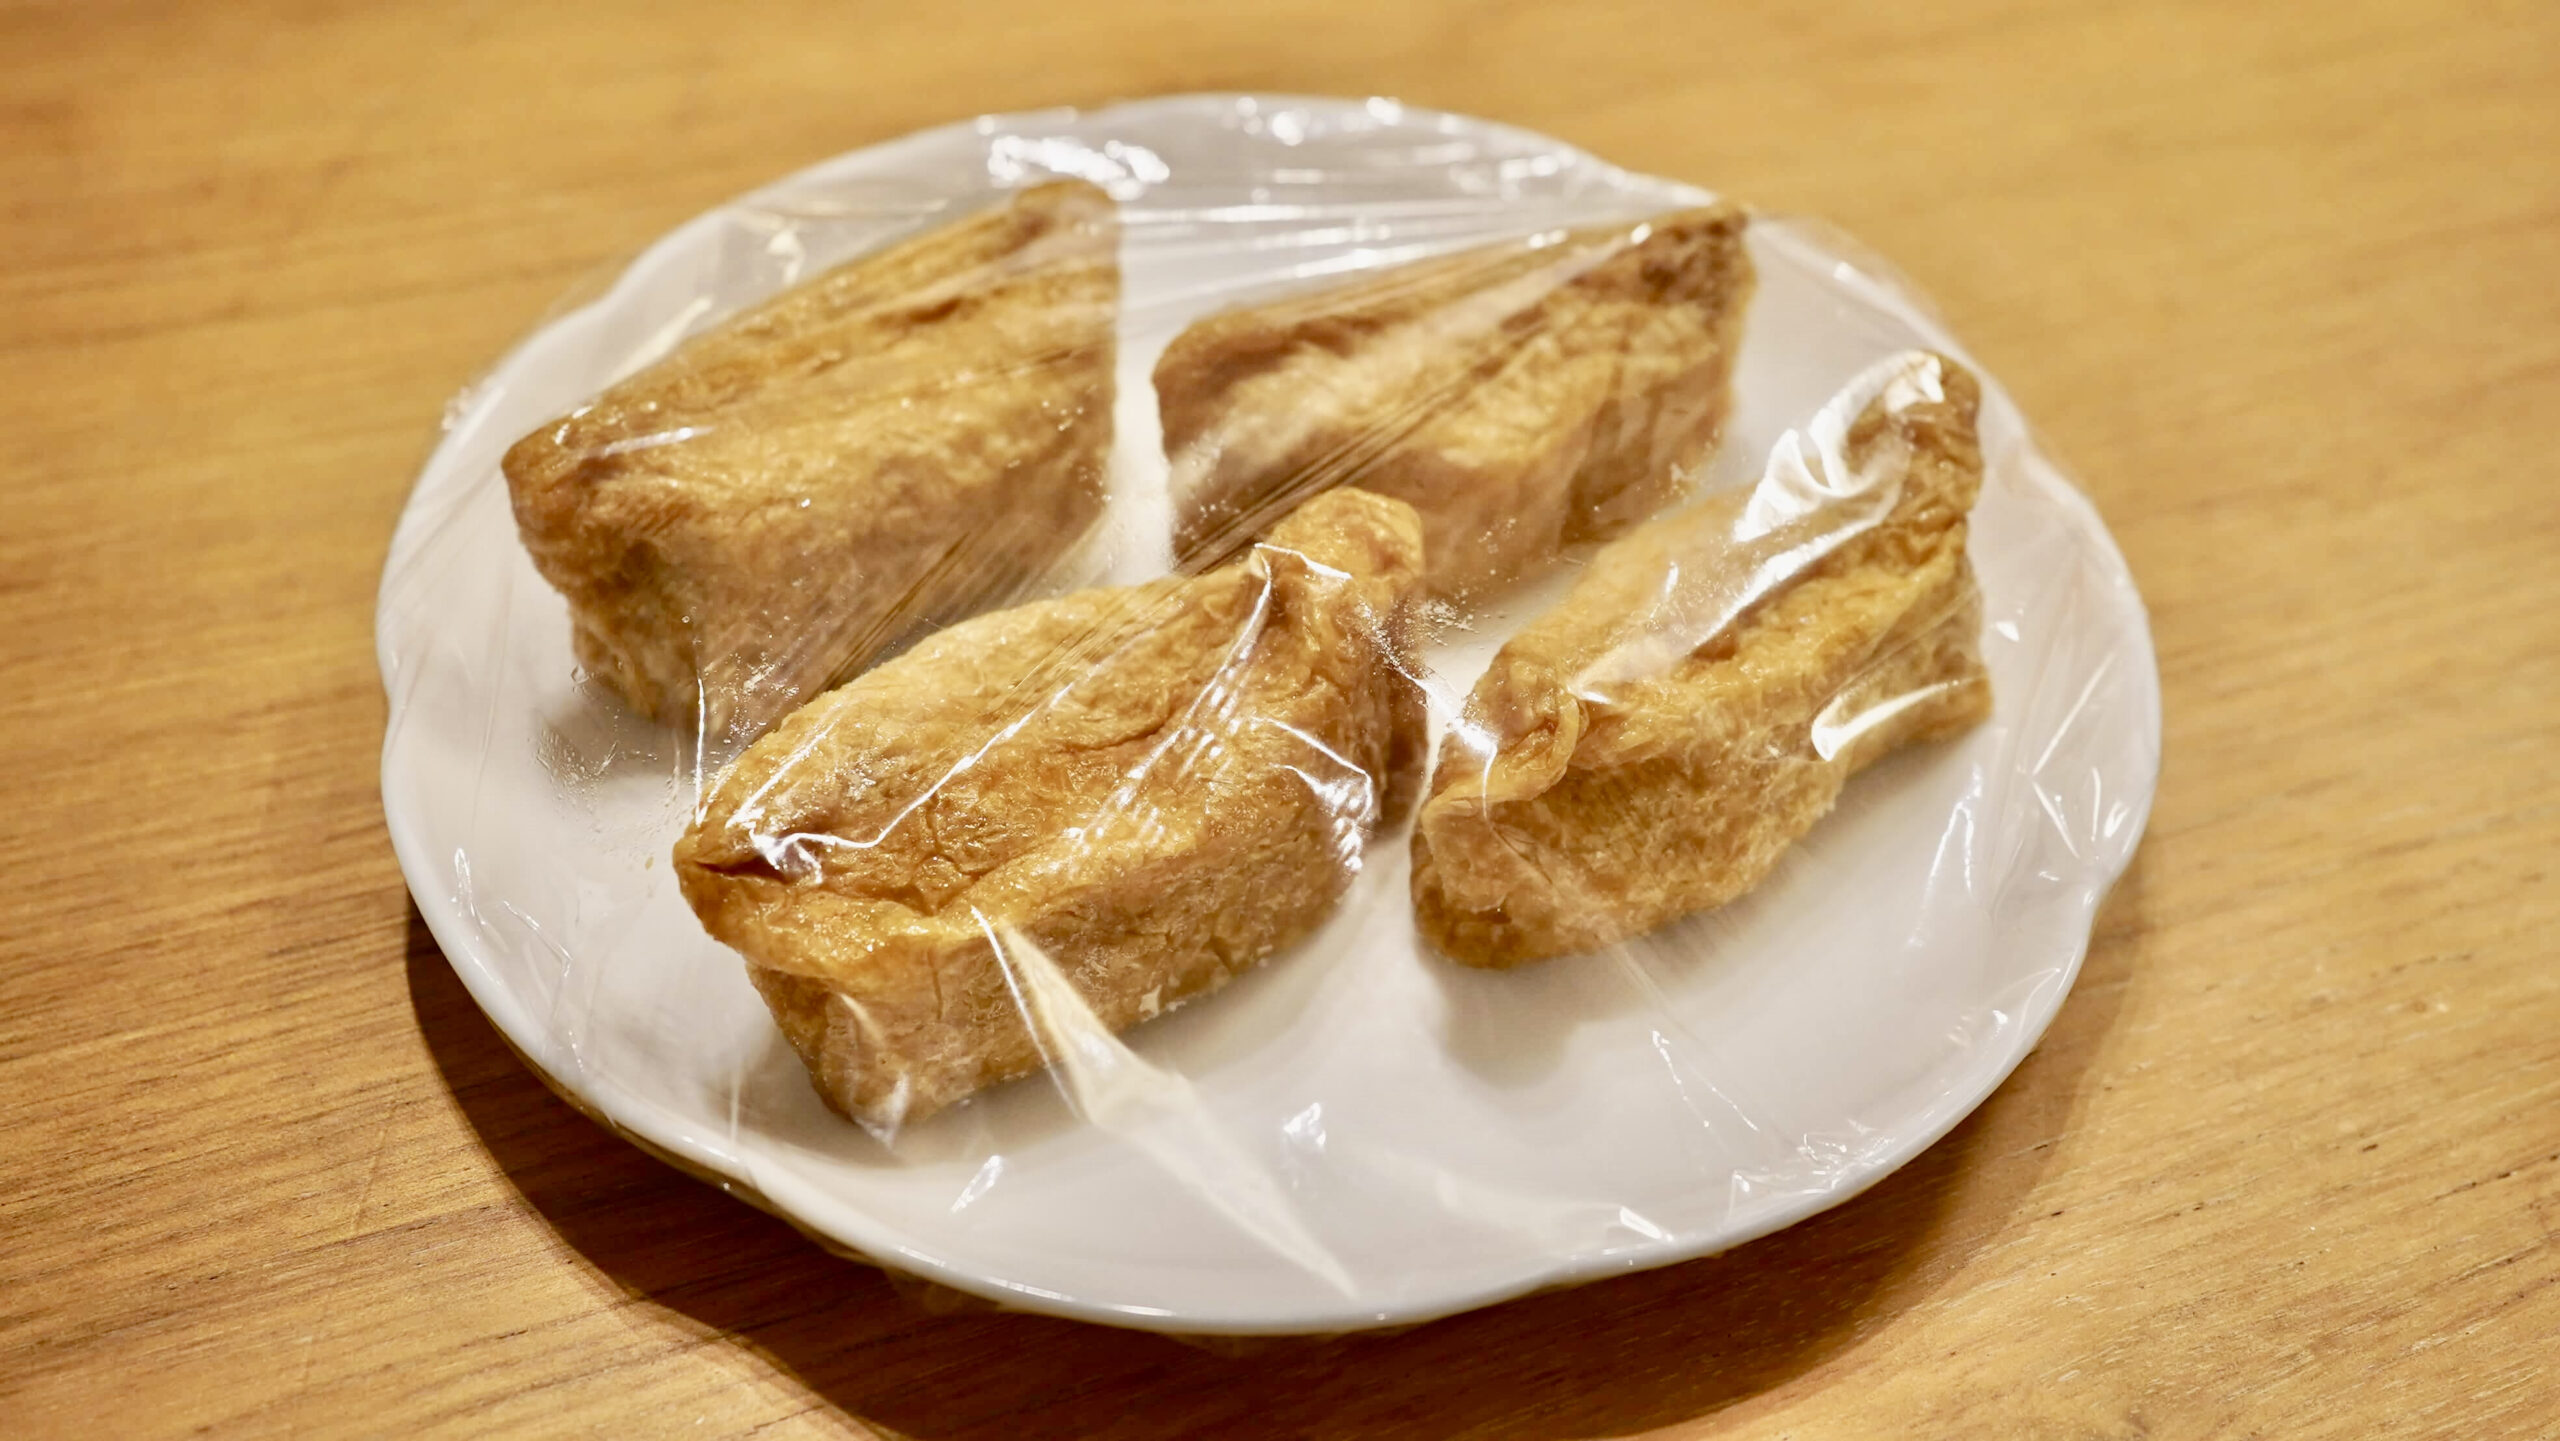 「ごはんの里」の冷凍食品「五目いなり寿司」にラップをかけた写真